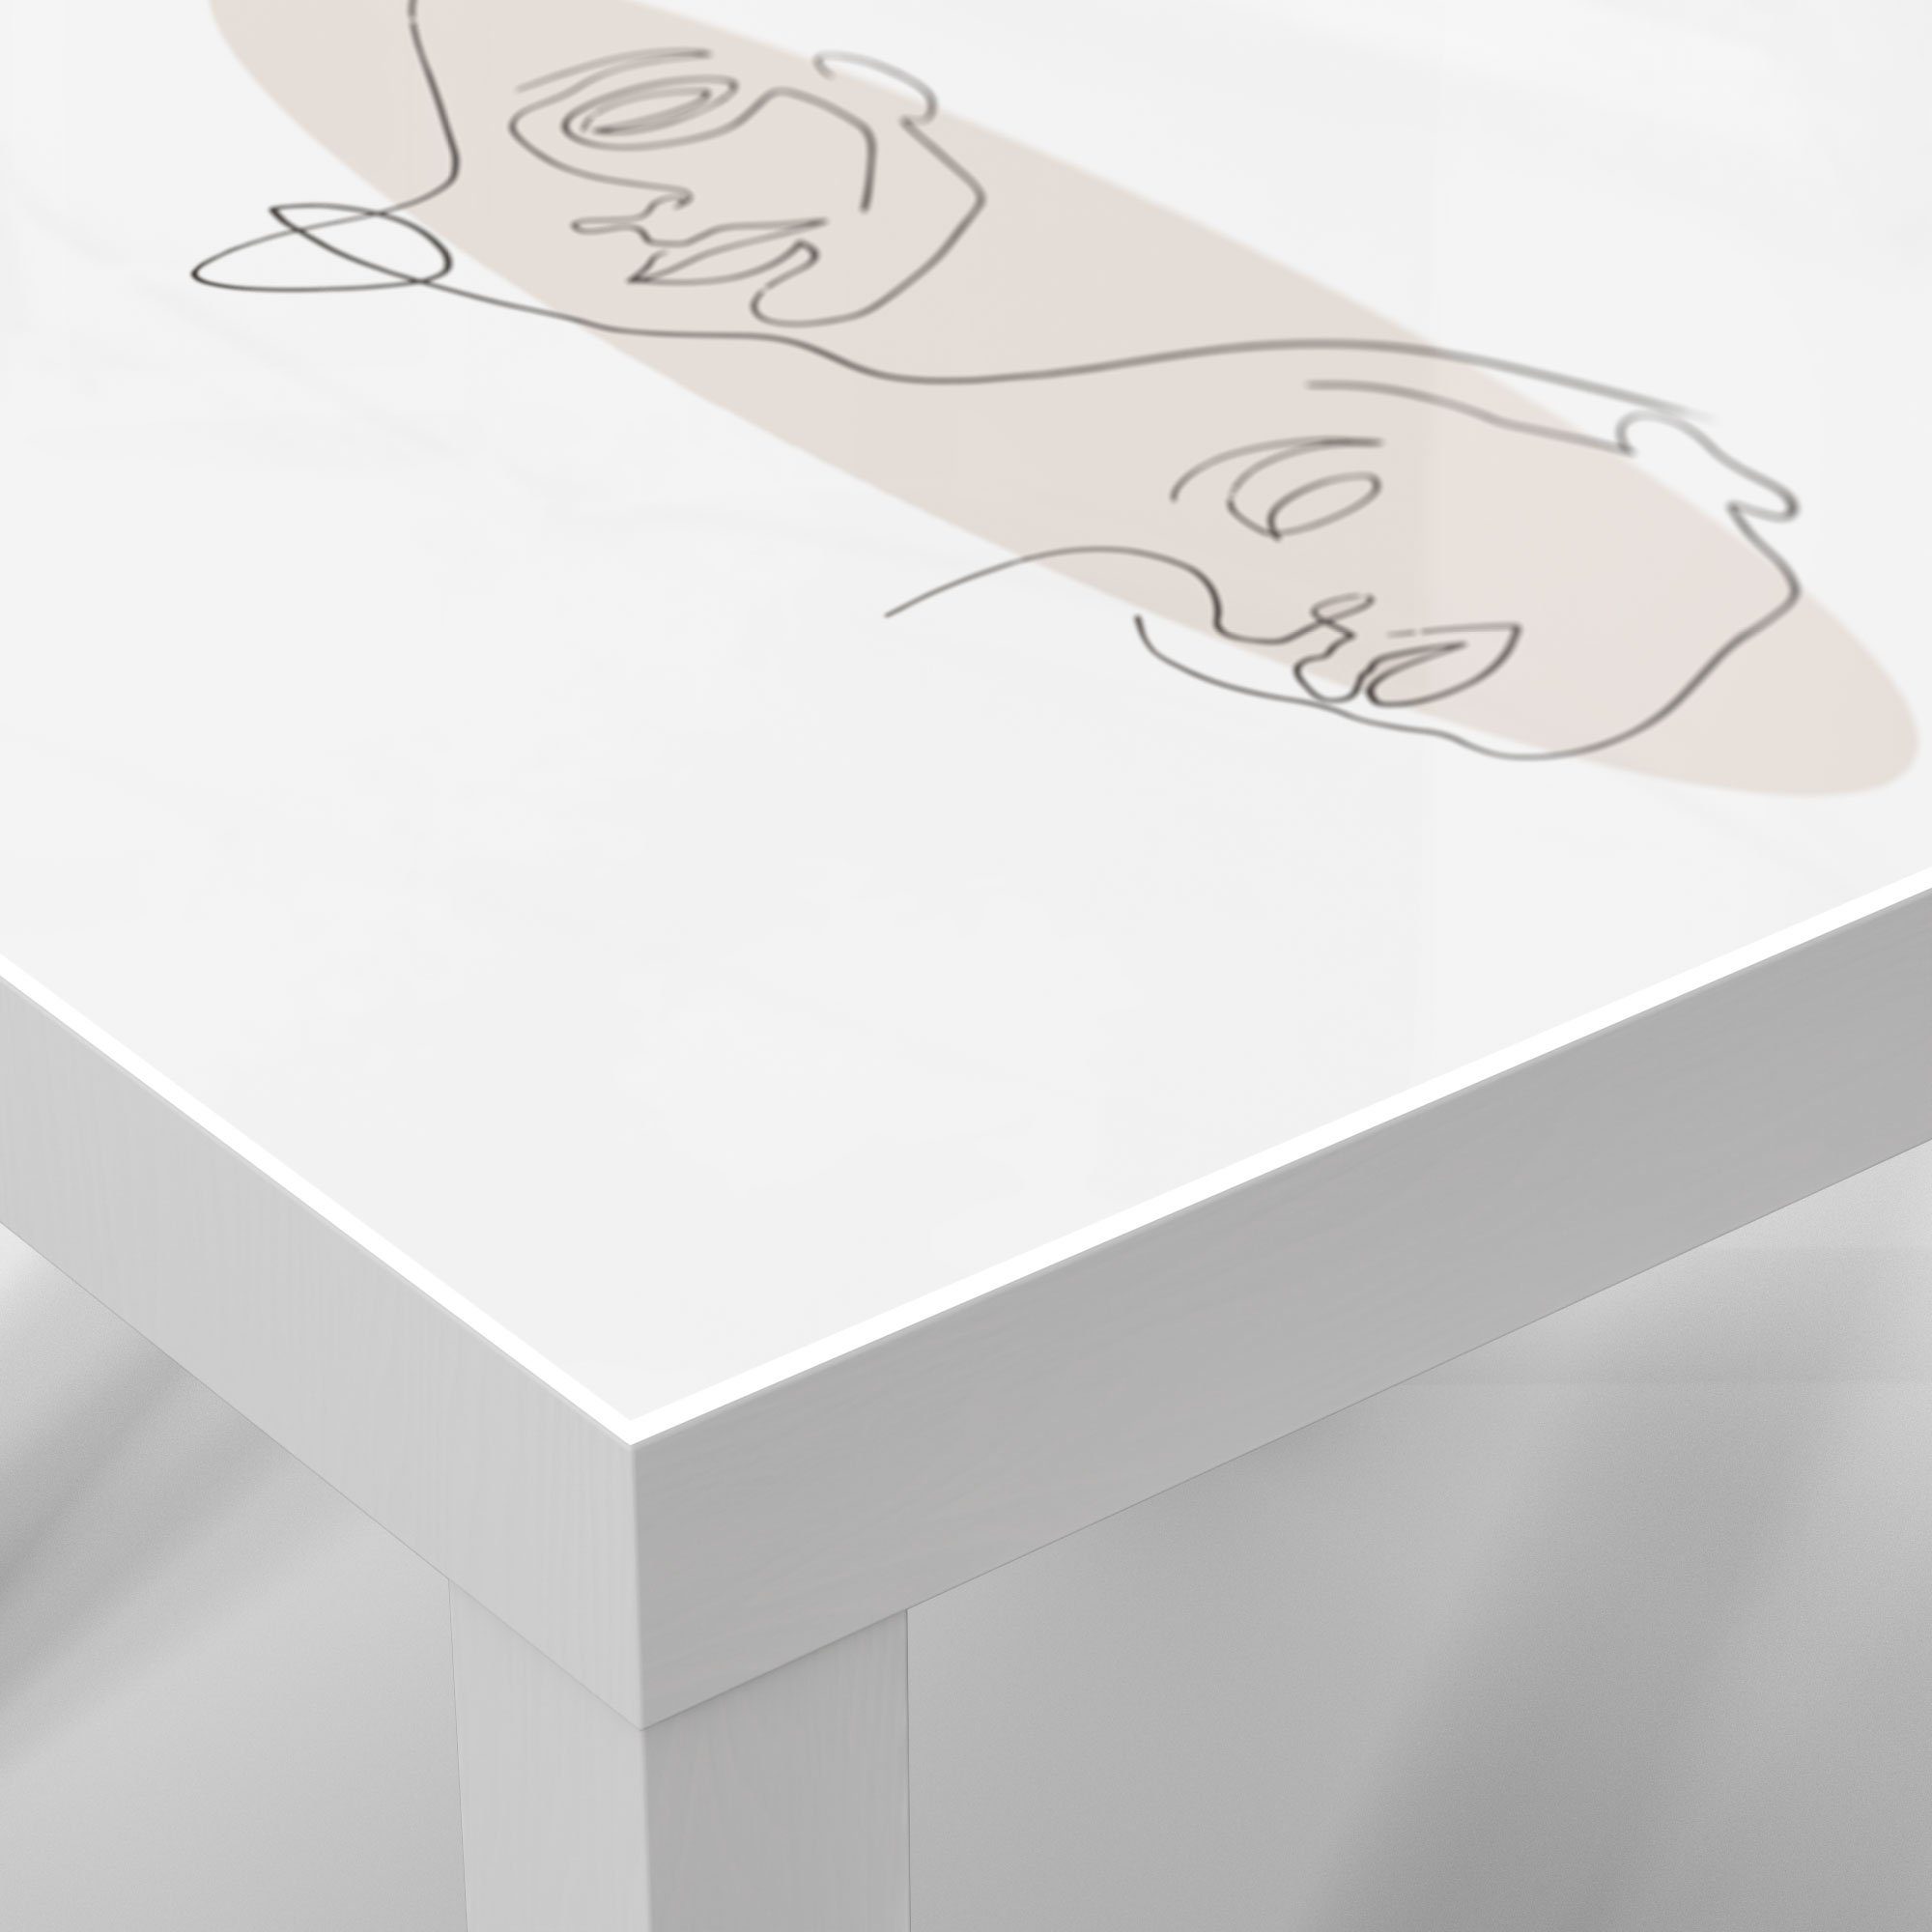 Couchtisch Beistelltisch Weiß Glas DEQORI Glastisch Oval', vor 'Linien-Gesichter modern